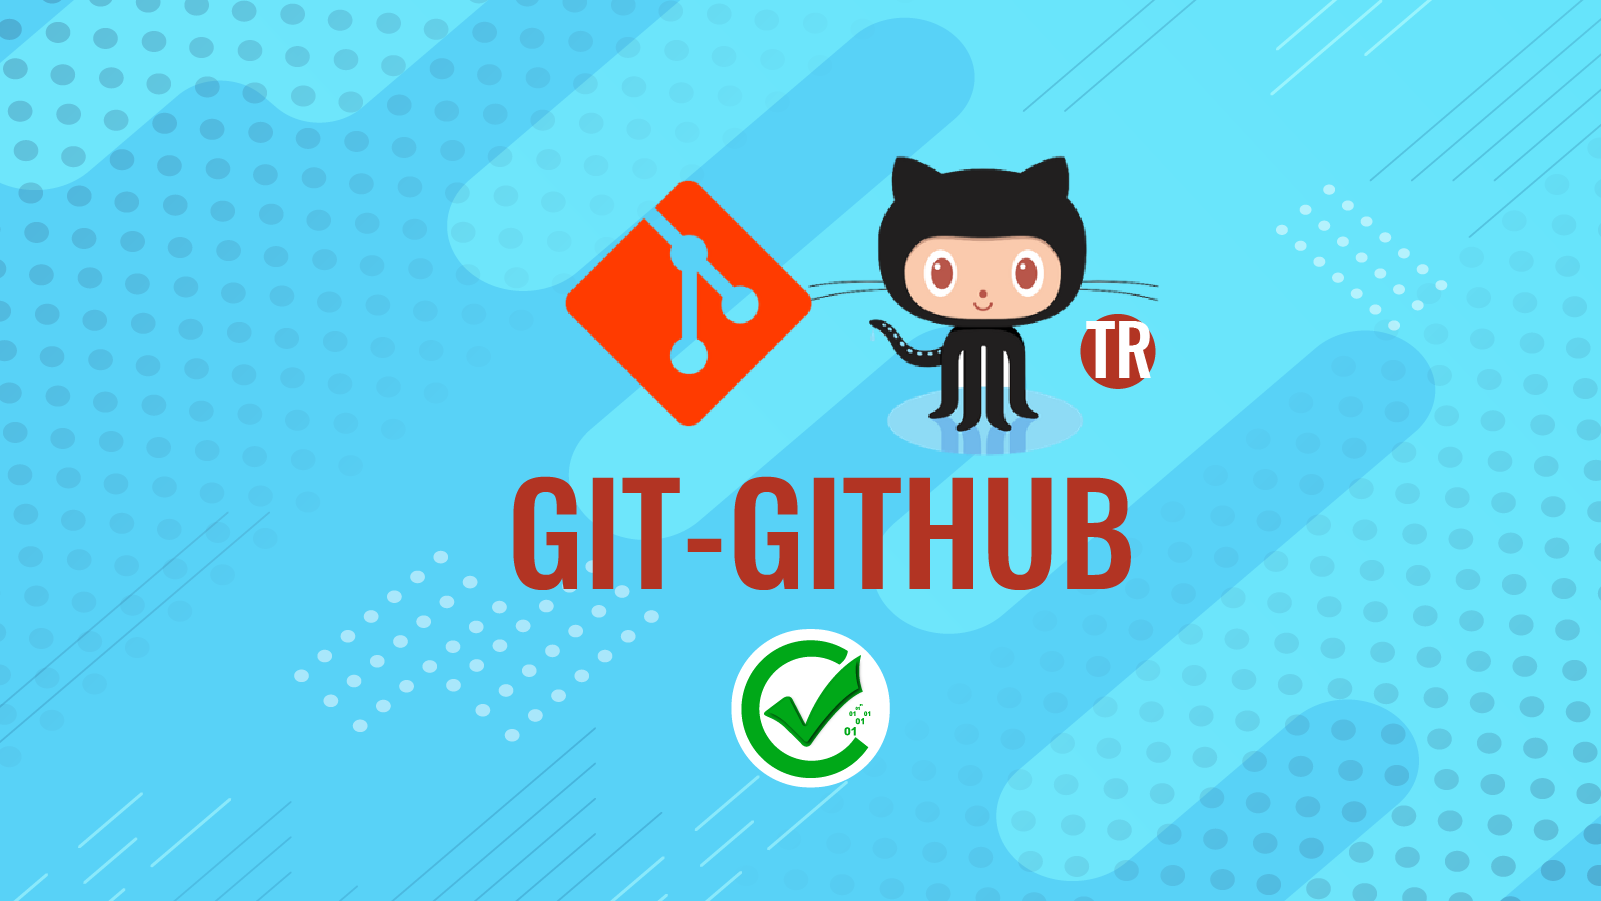 Git - Github 107 128